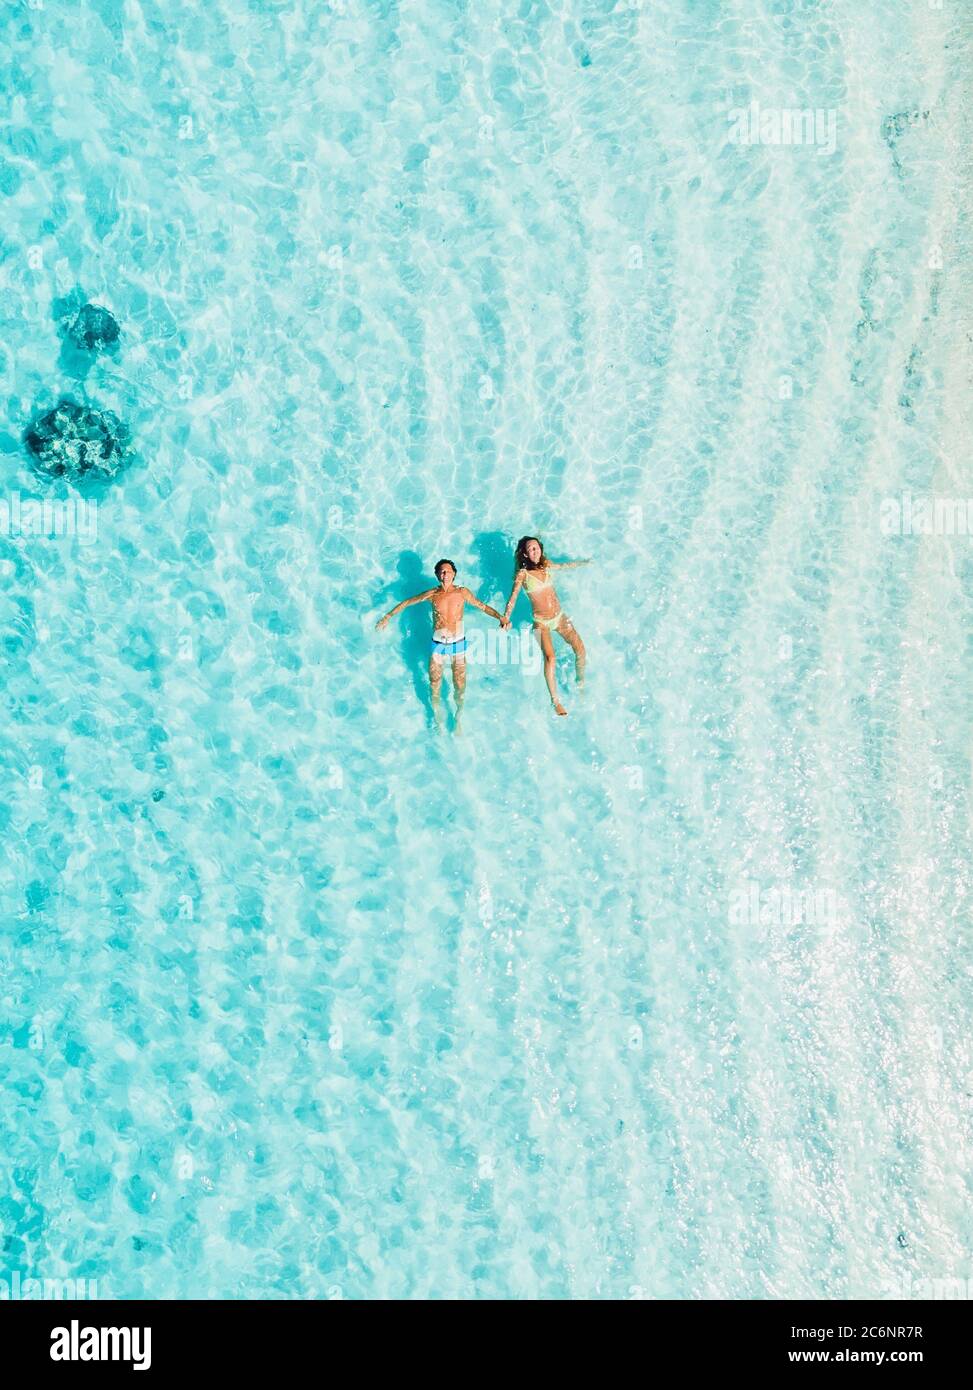 Schwangere Frau mit Ehemann schwimmen im blauen Meer. Luftaufnahme  Stockfotografie - Alamy